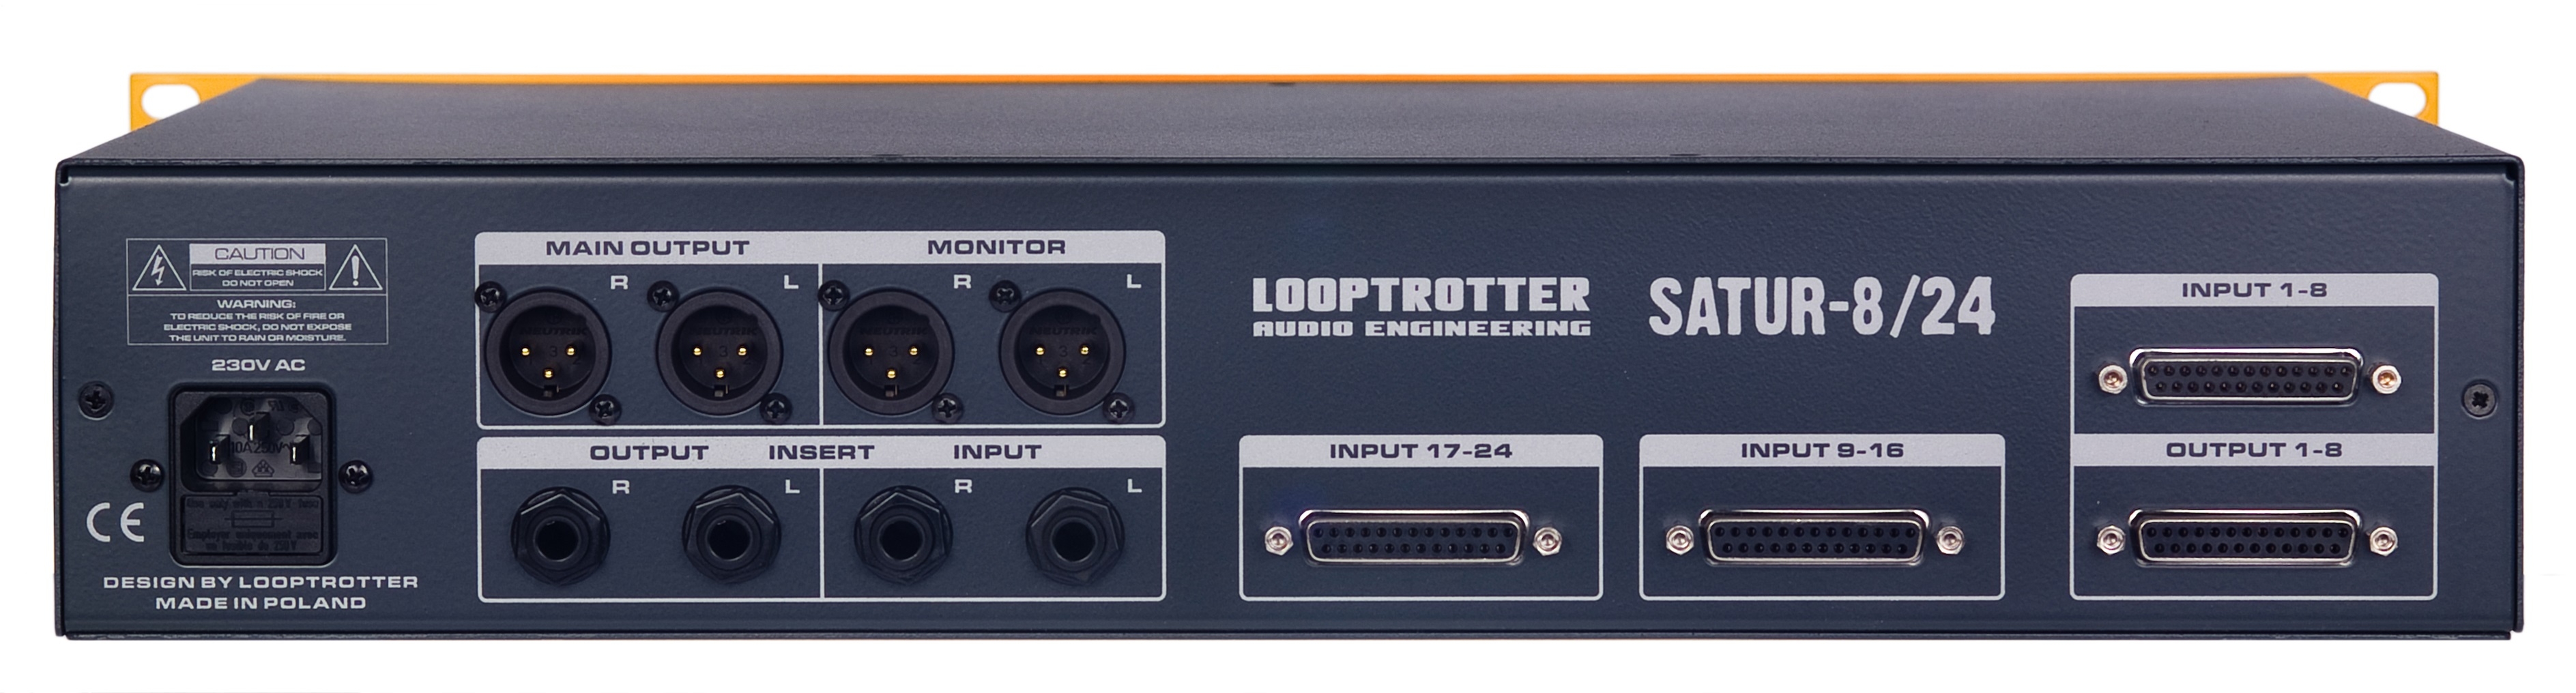 Looptrotter Audio Engineering SATUR-8/24